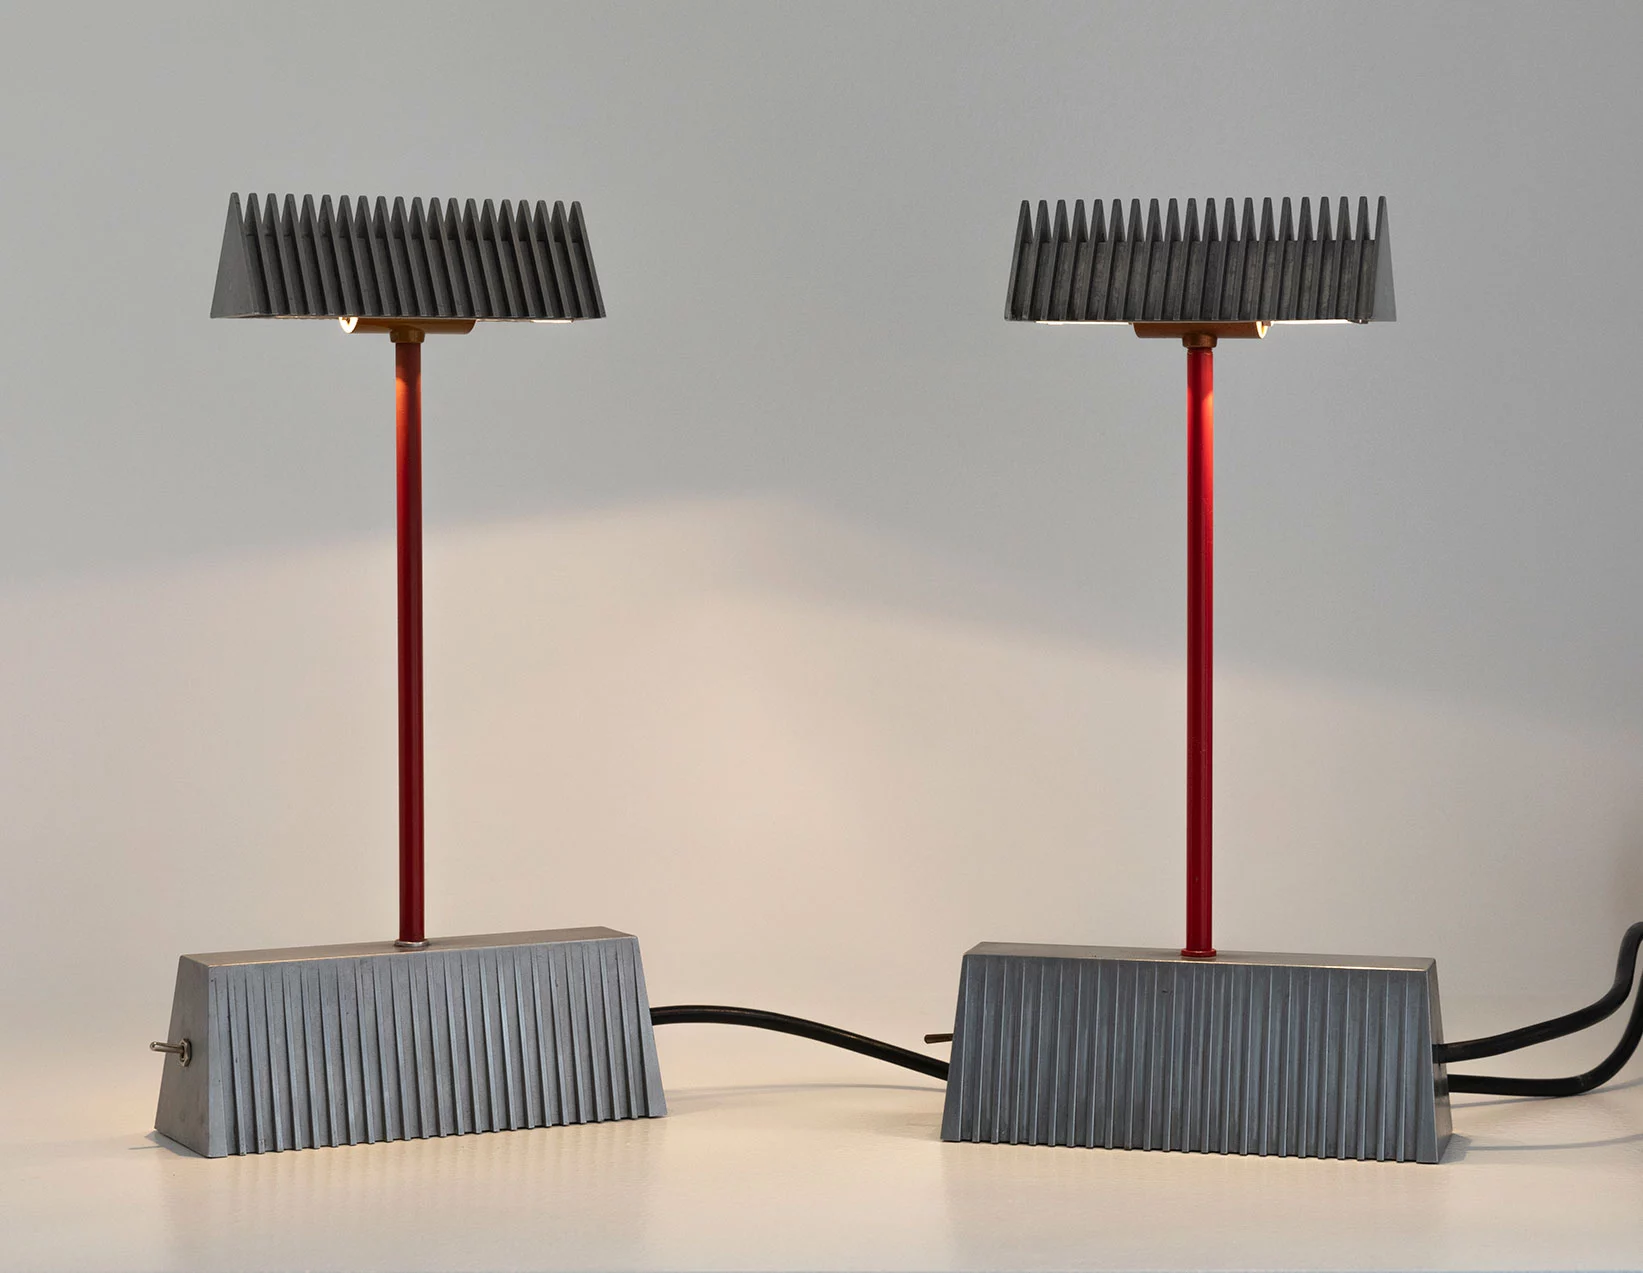 Table lamp 'Scintilla' - Piero Castiglioni - Table light - Galerie kreo